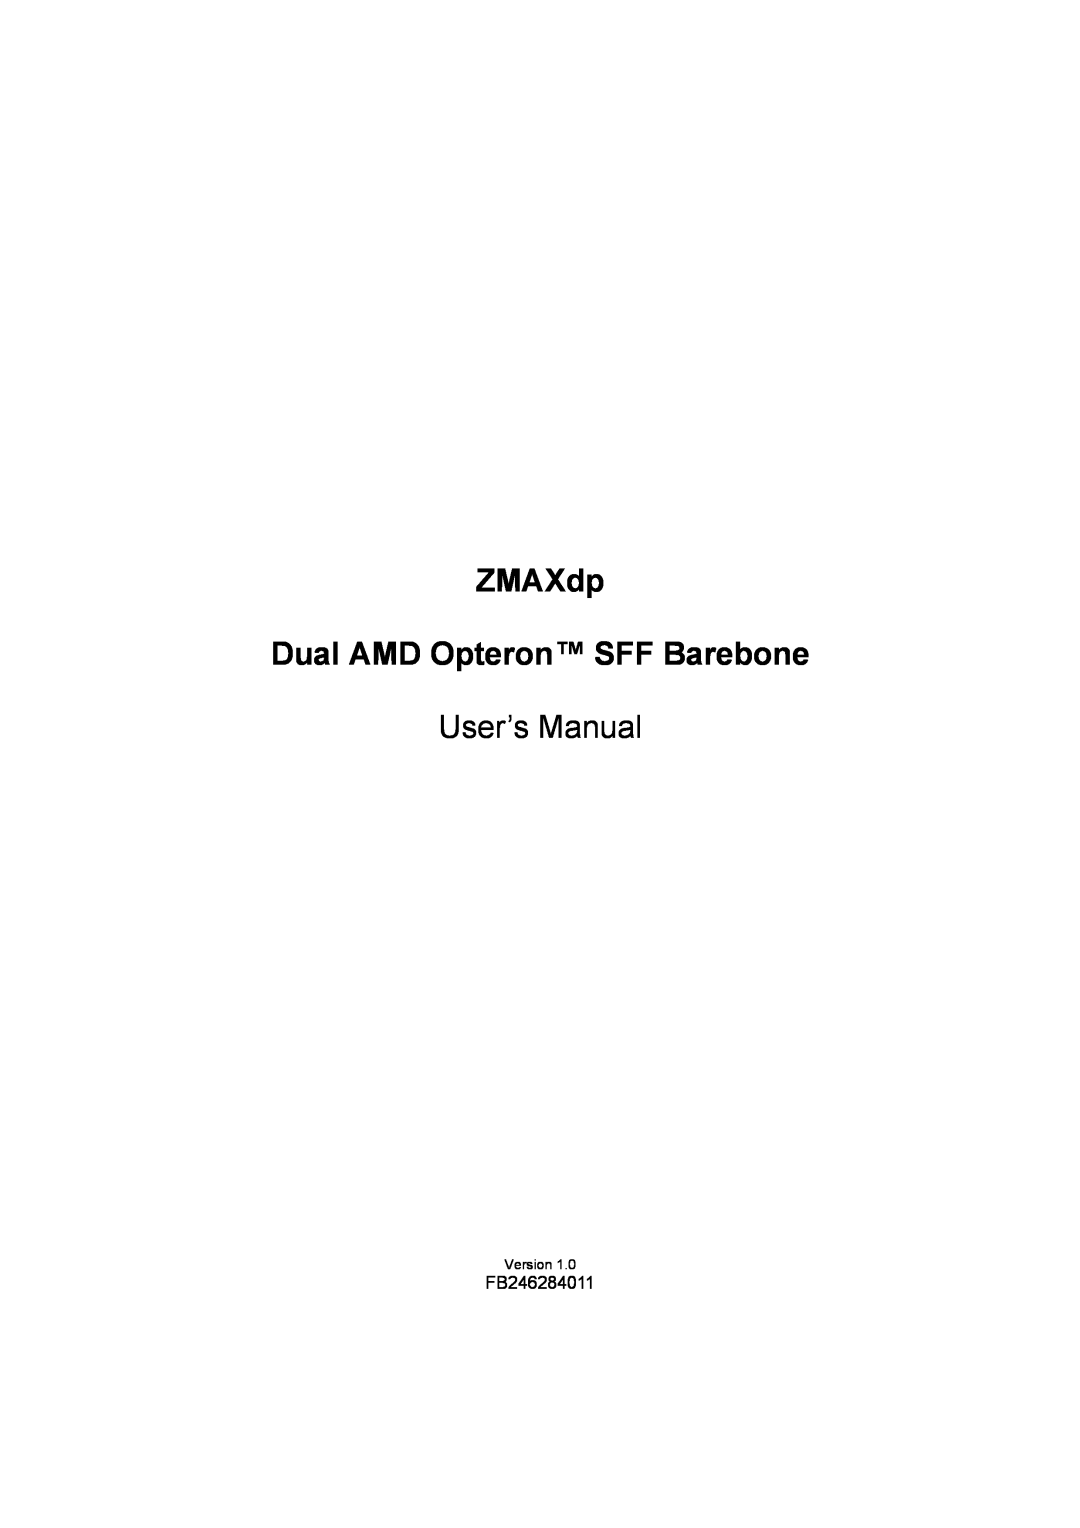 IBM user manual ZMAXdp Dual AMD Opteron SFF Barebone, User’s Manual 